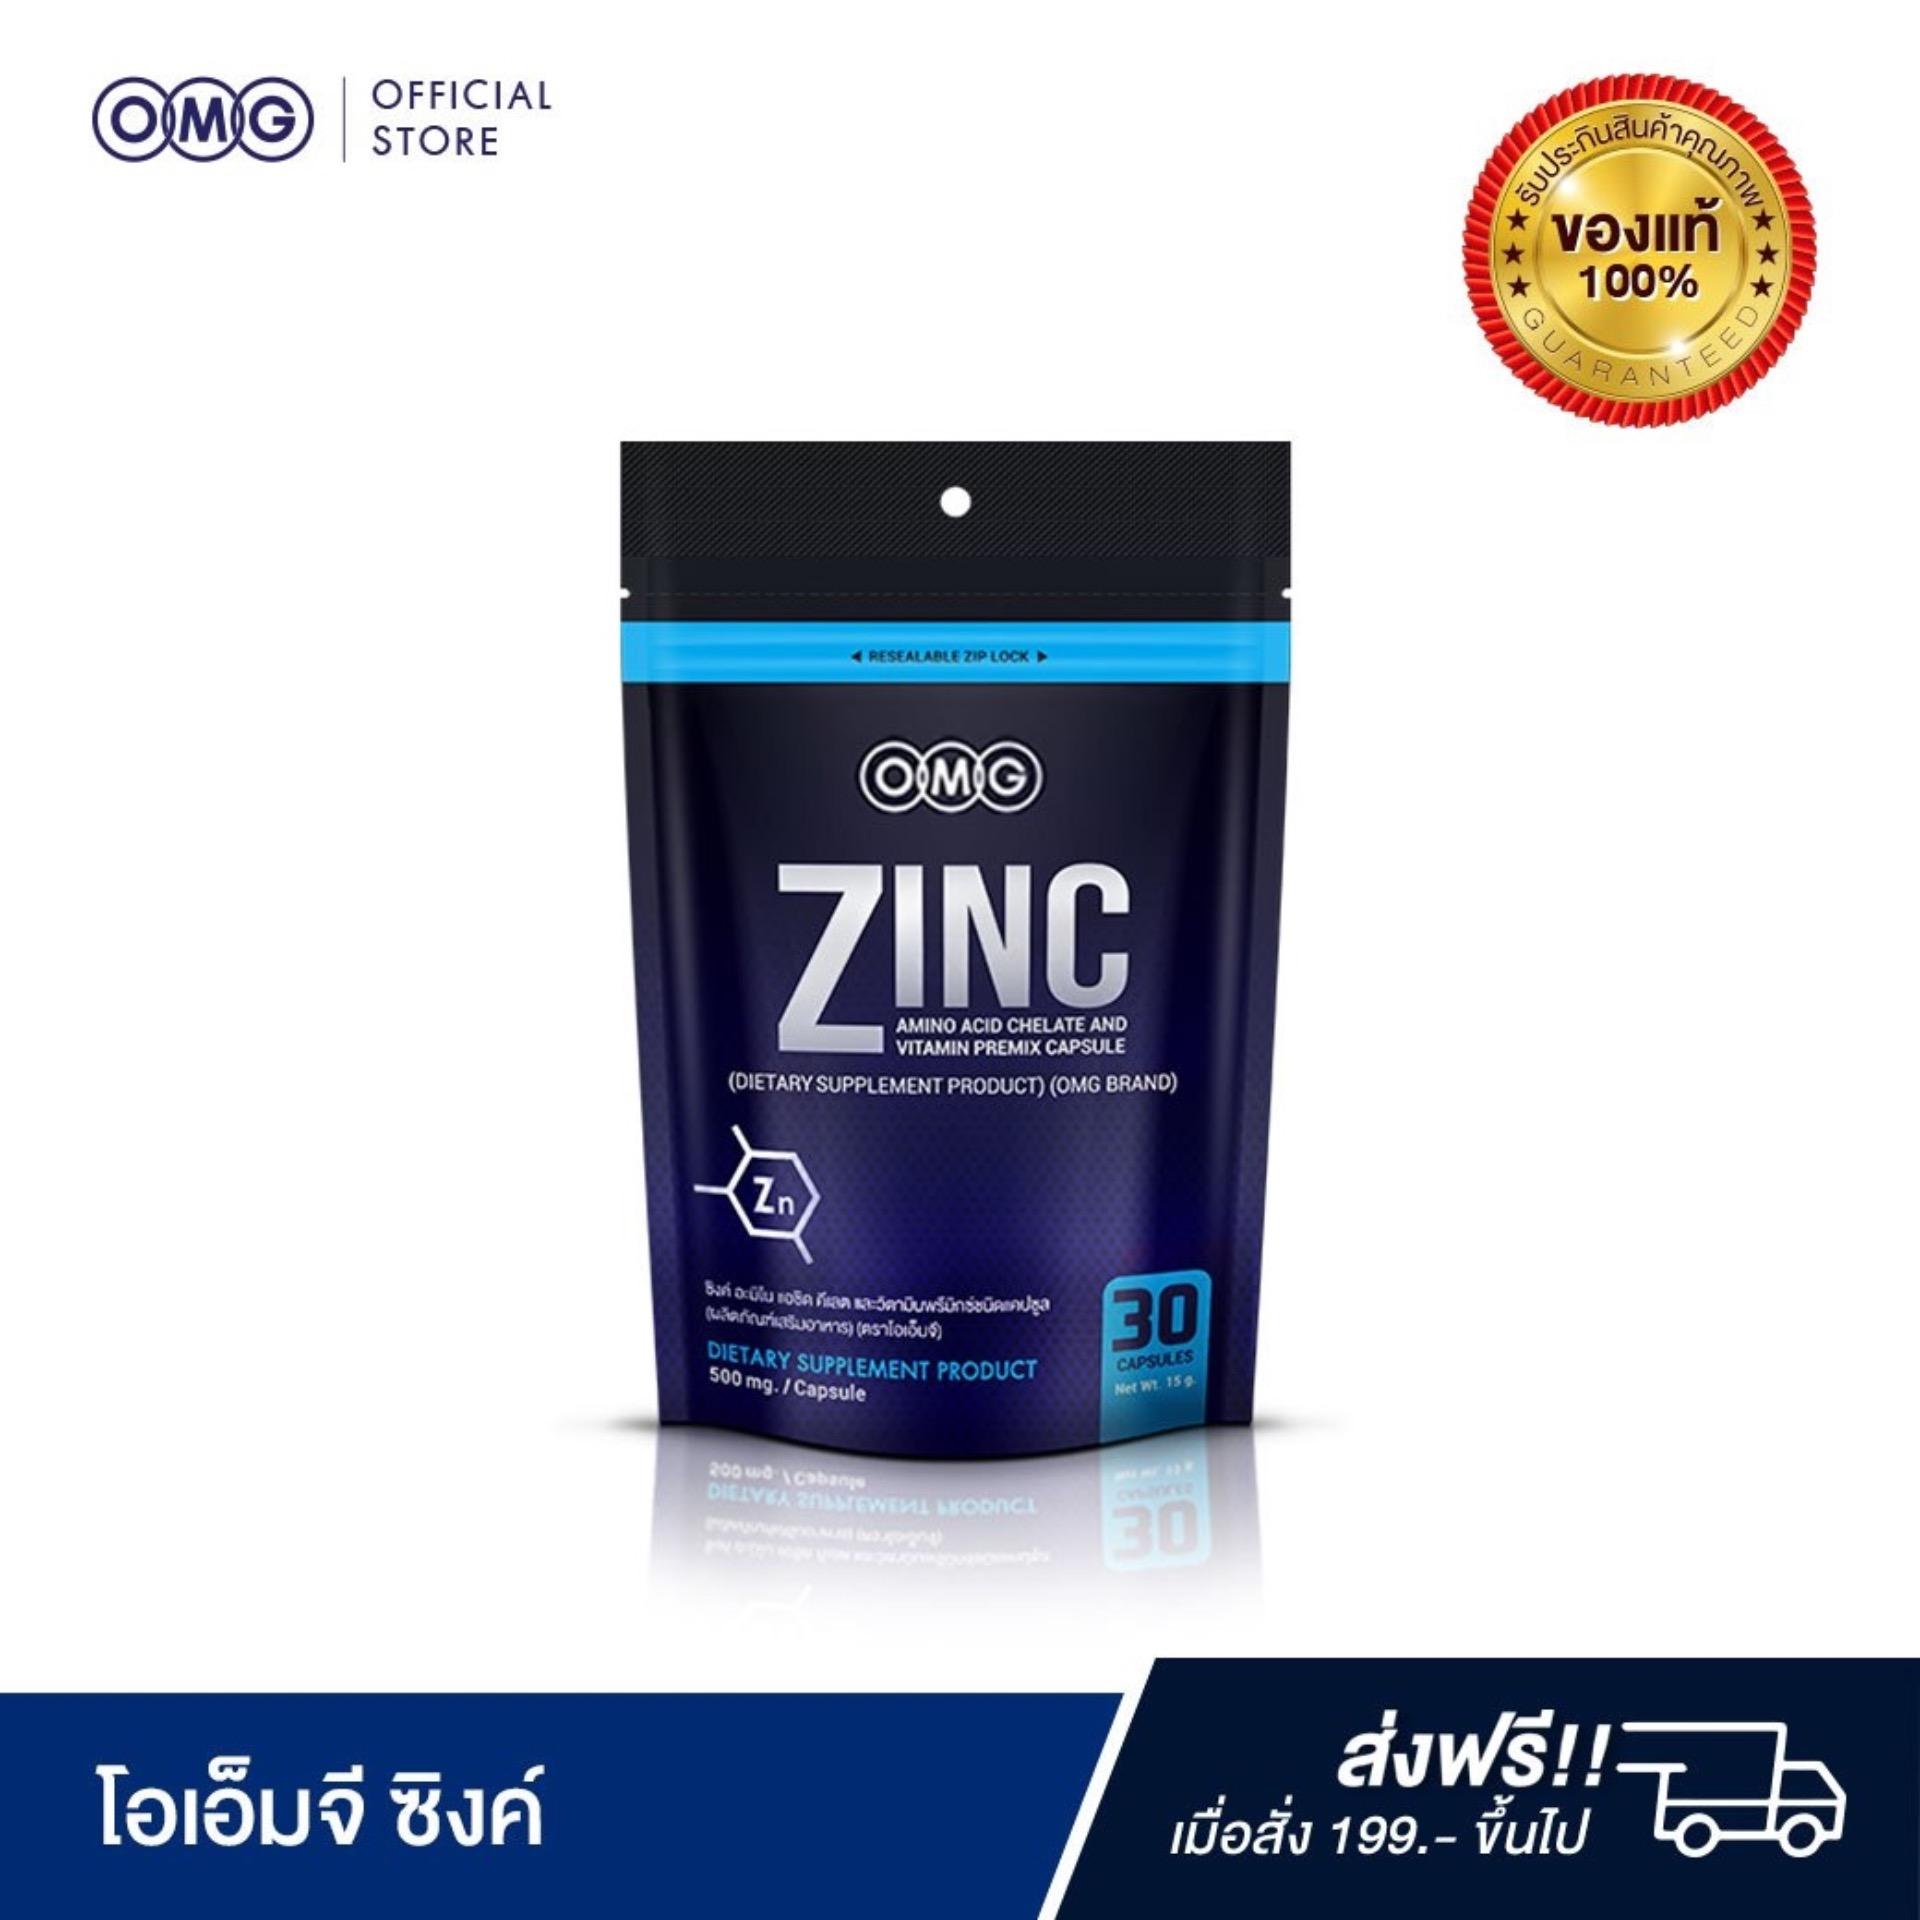 ผลิตภัณฑ์ สิว การหลุดร่วงของเส้นผม ซิงค์ OMG Zinc Amino Acid ( บรรจุ 30 แคปซูล )